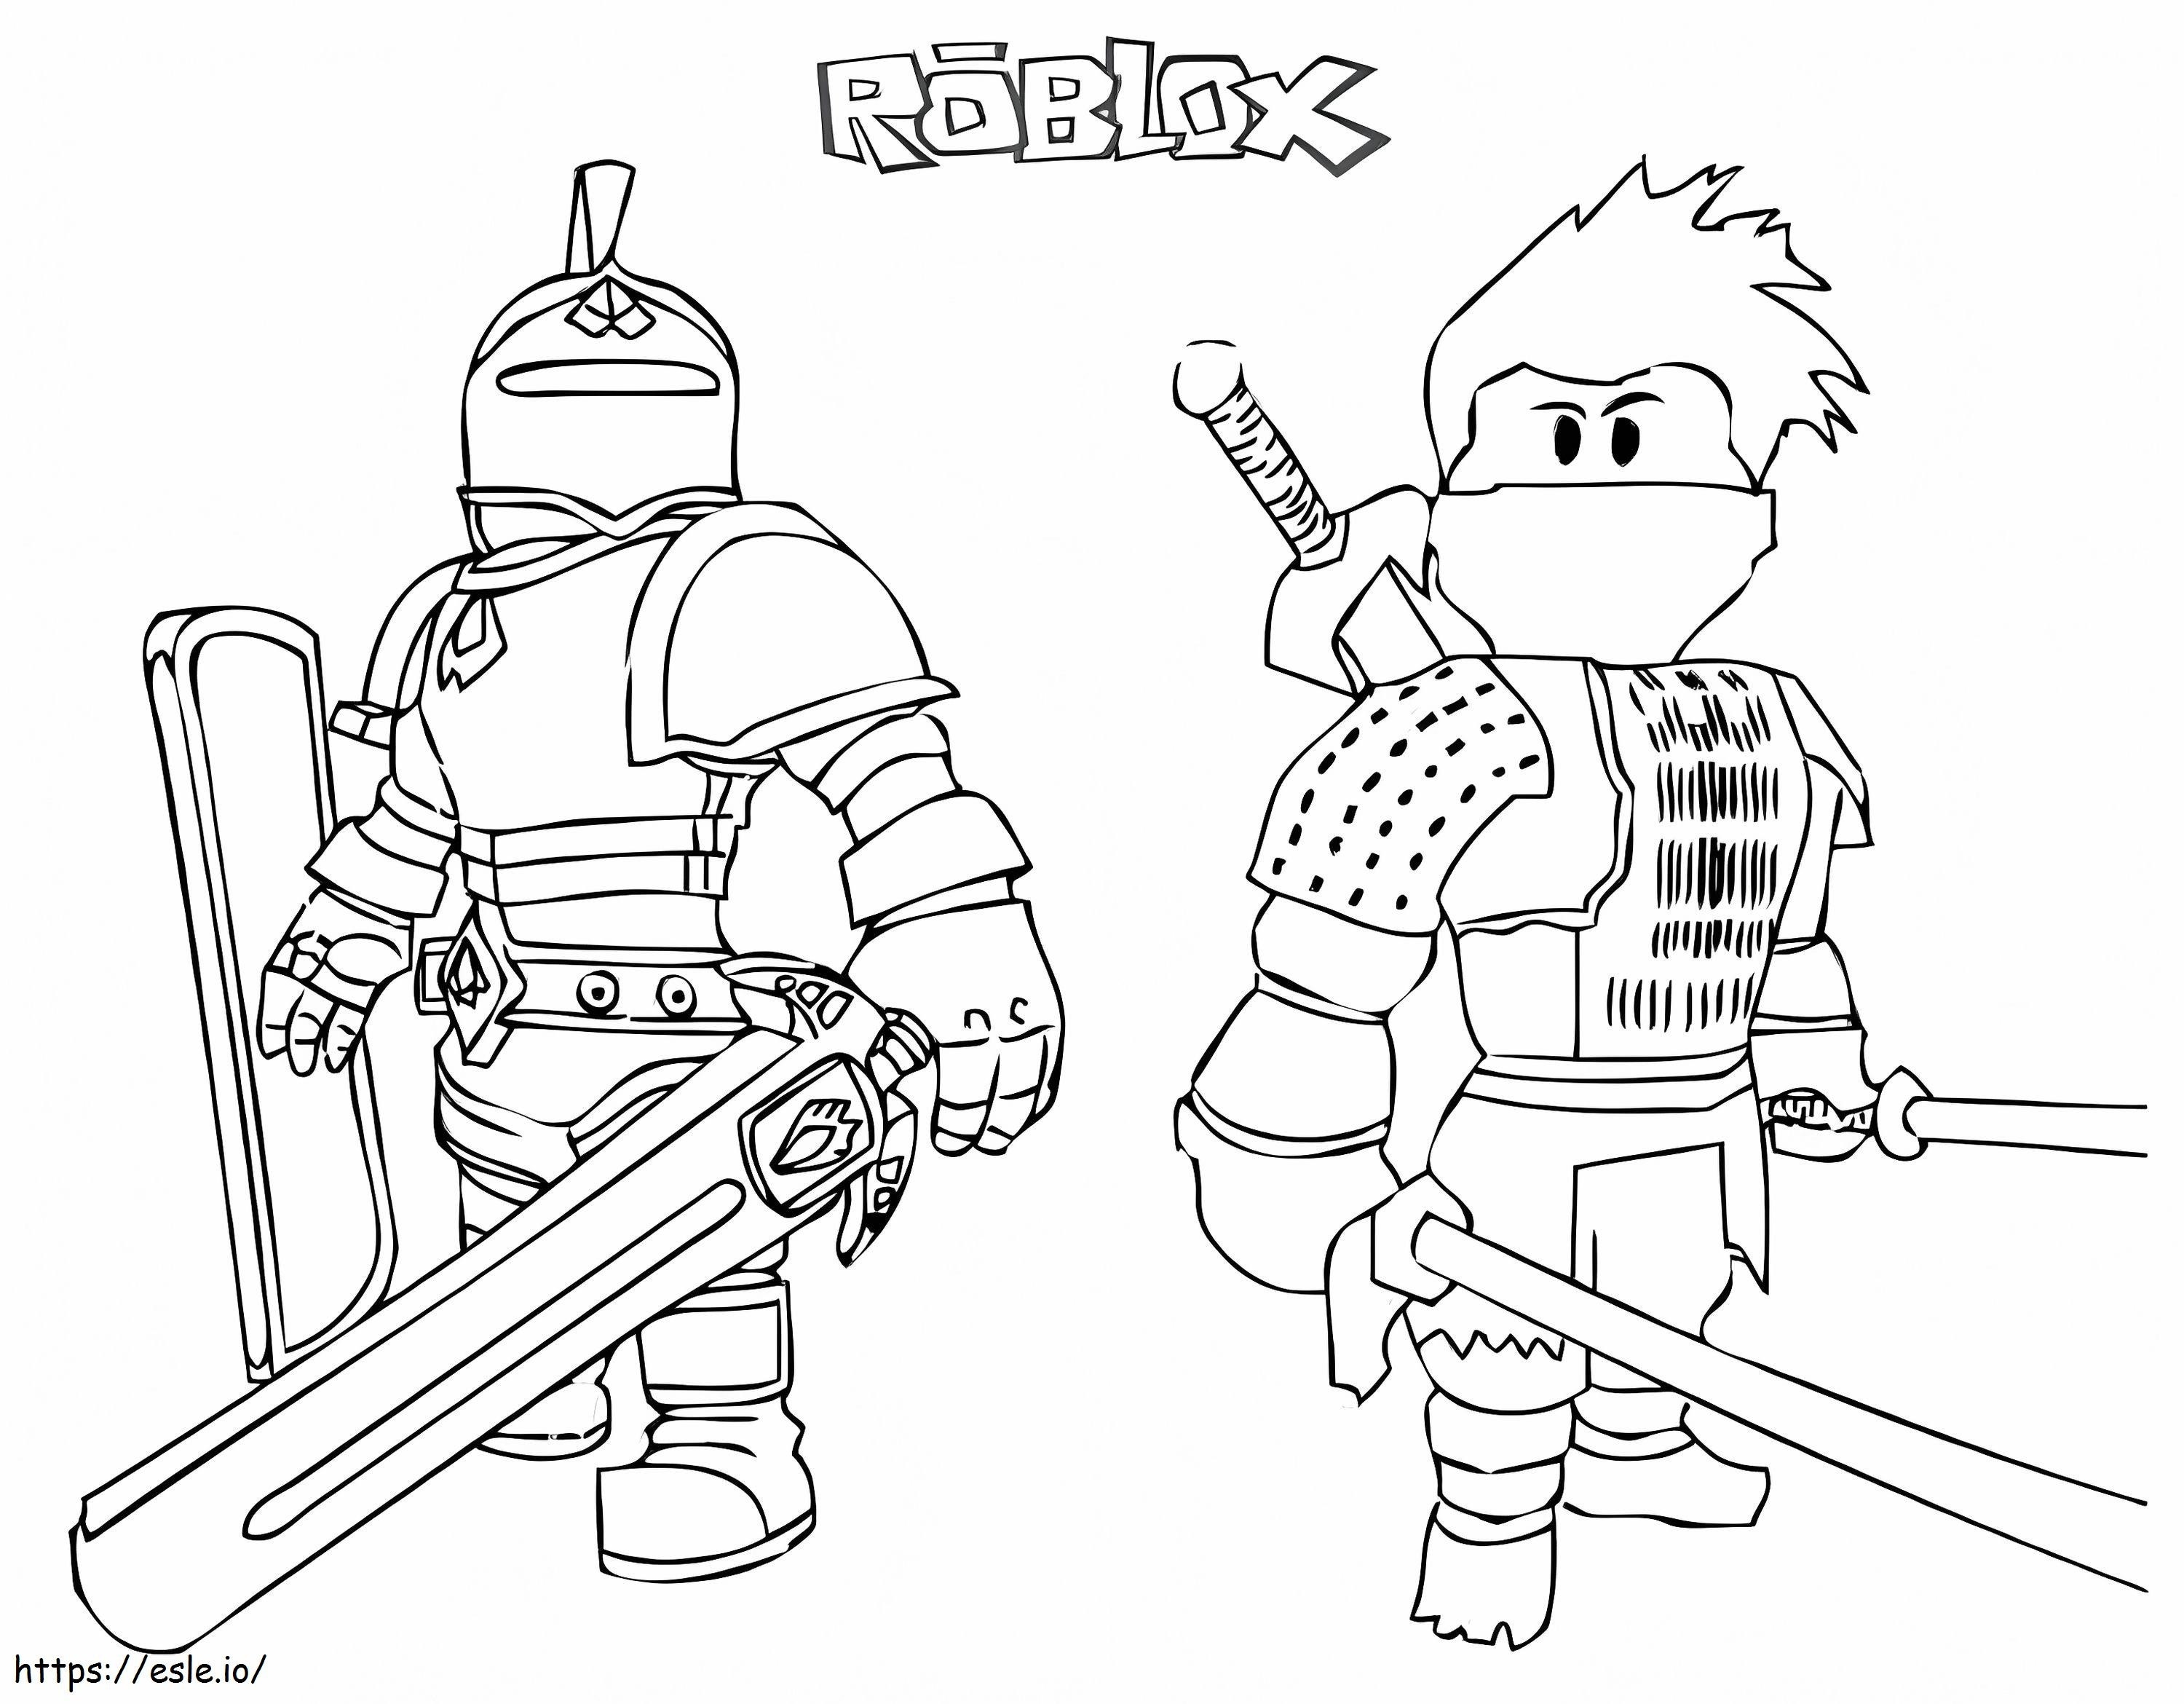 Rycerz Roblox i samuraj kolorowanka